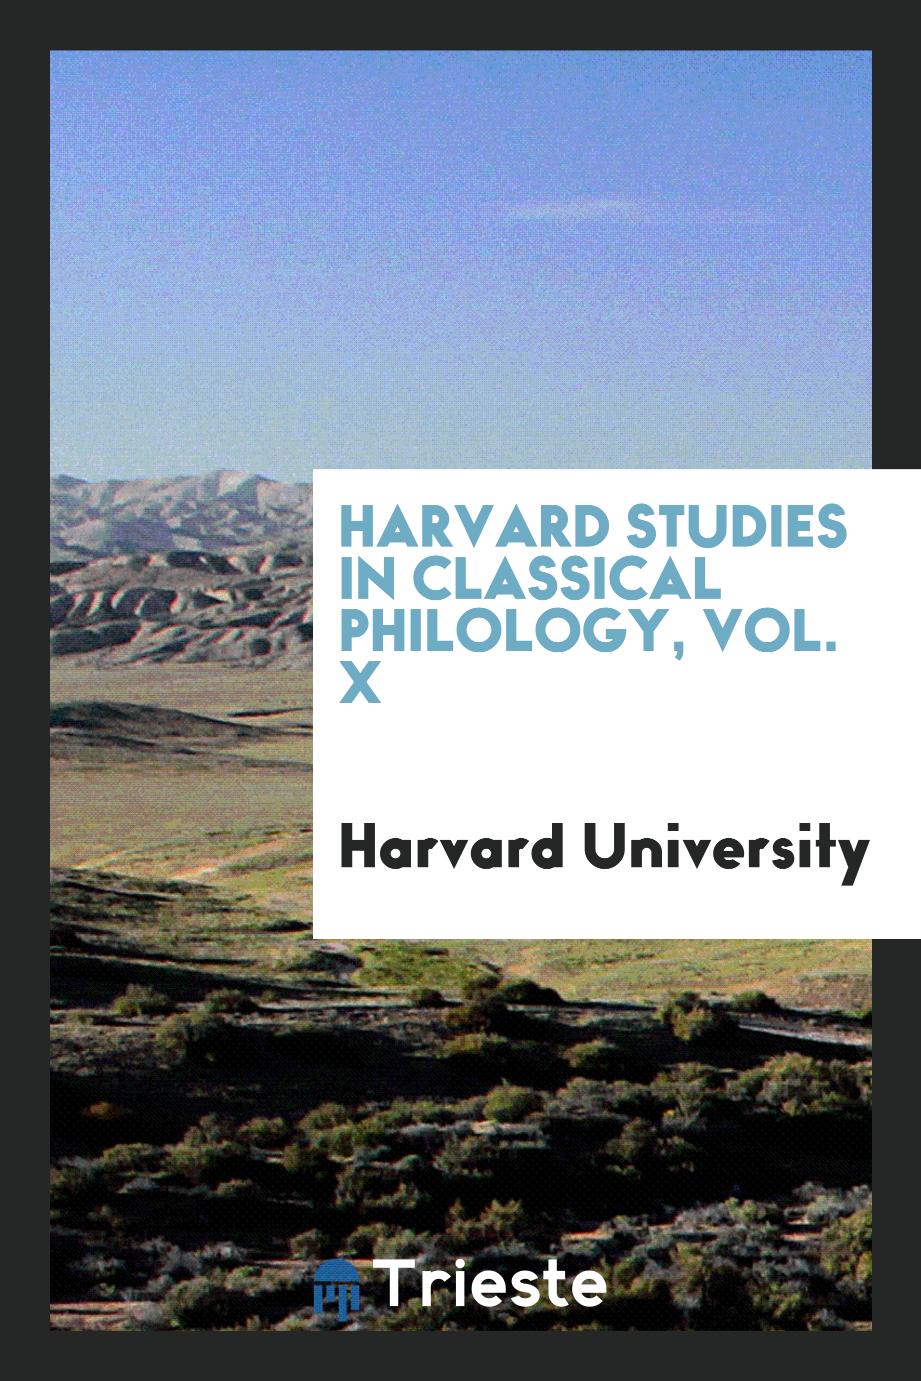 Harvard studies in classical philology, Vol. X